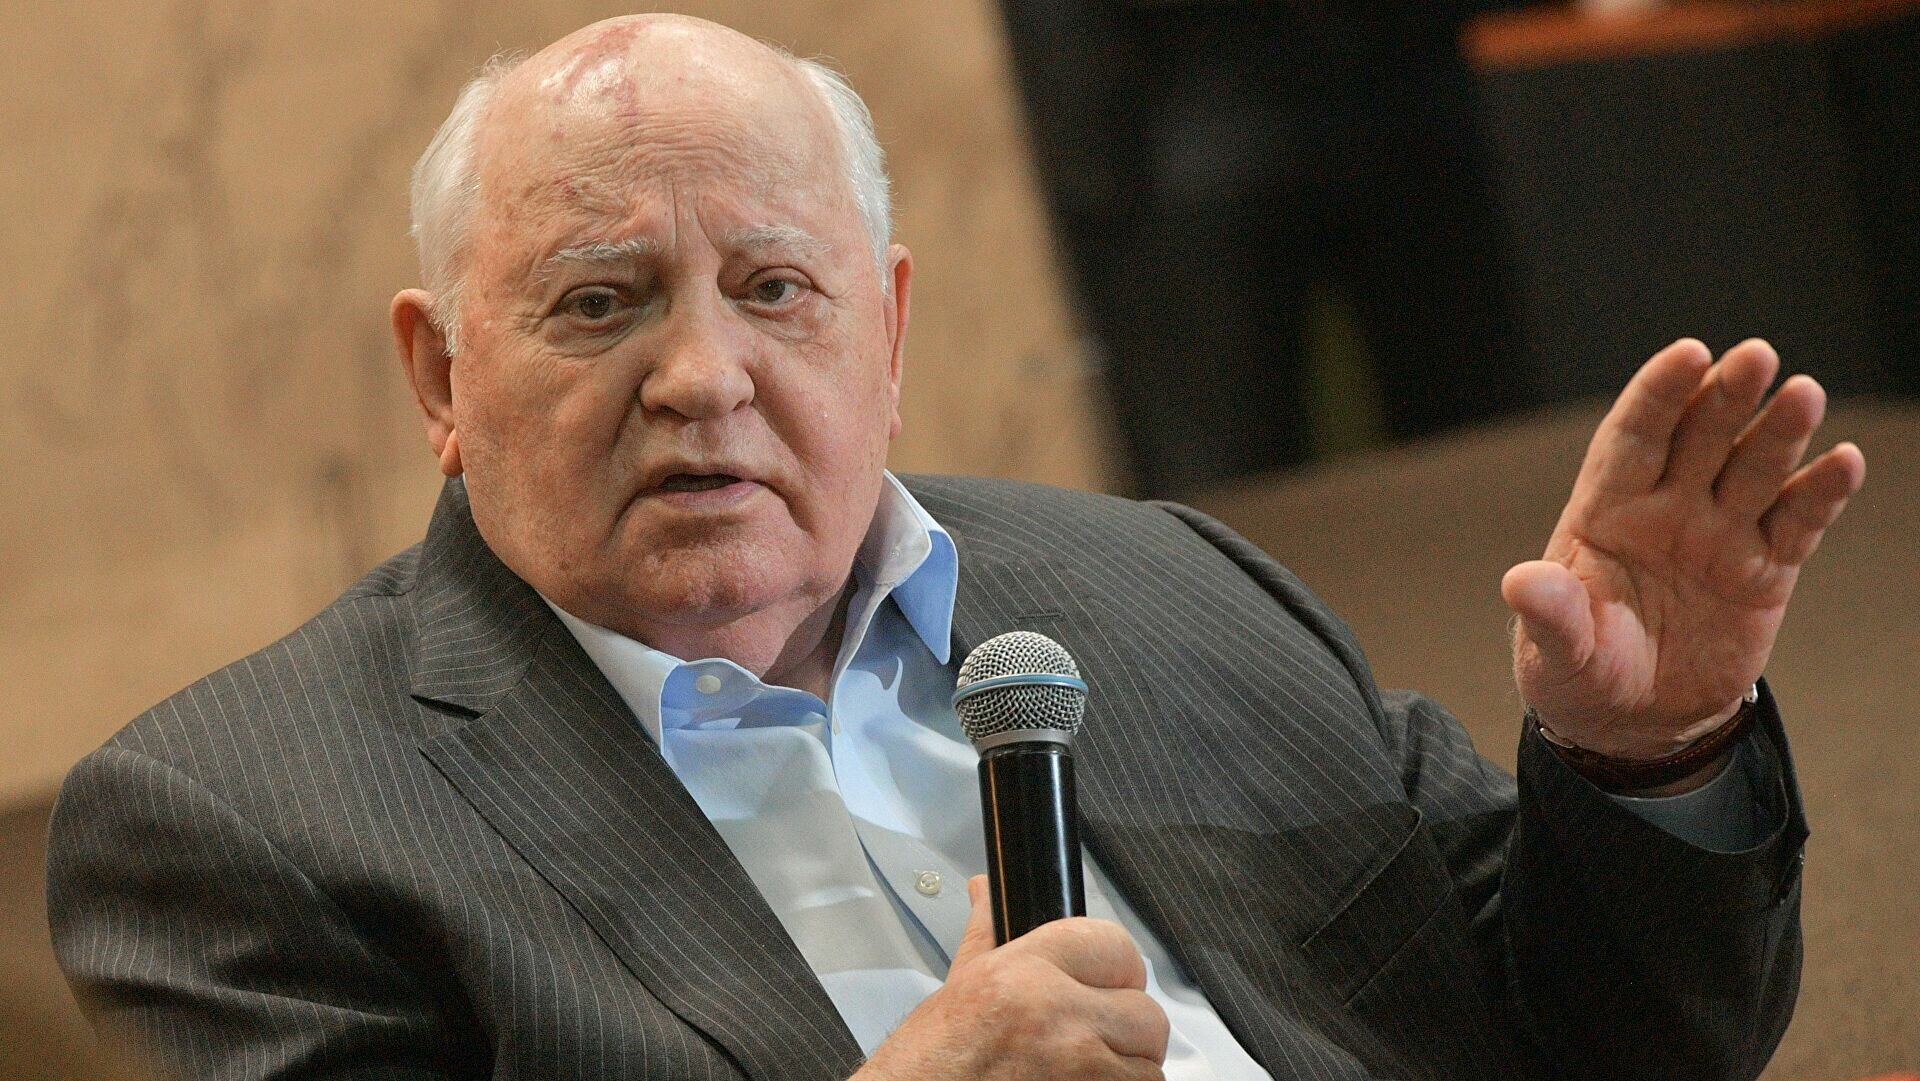 Горбачев оценил первый совместный поступок Путина и Байдена